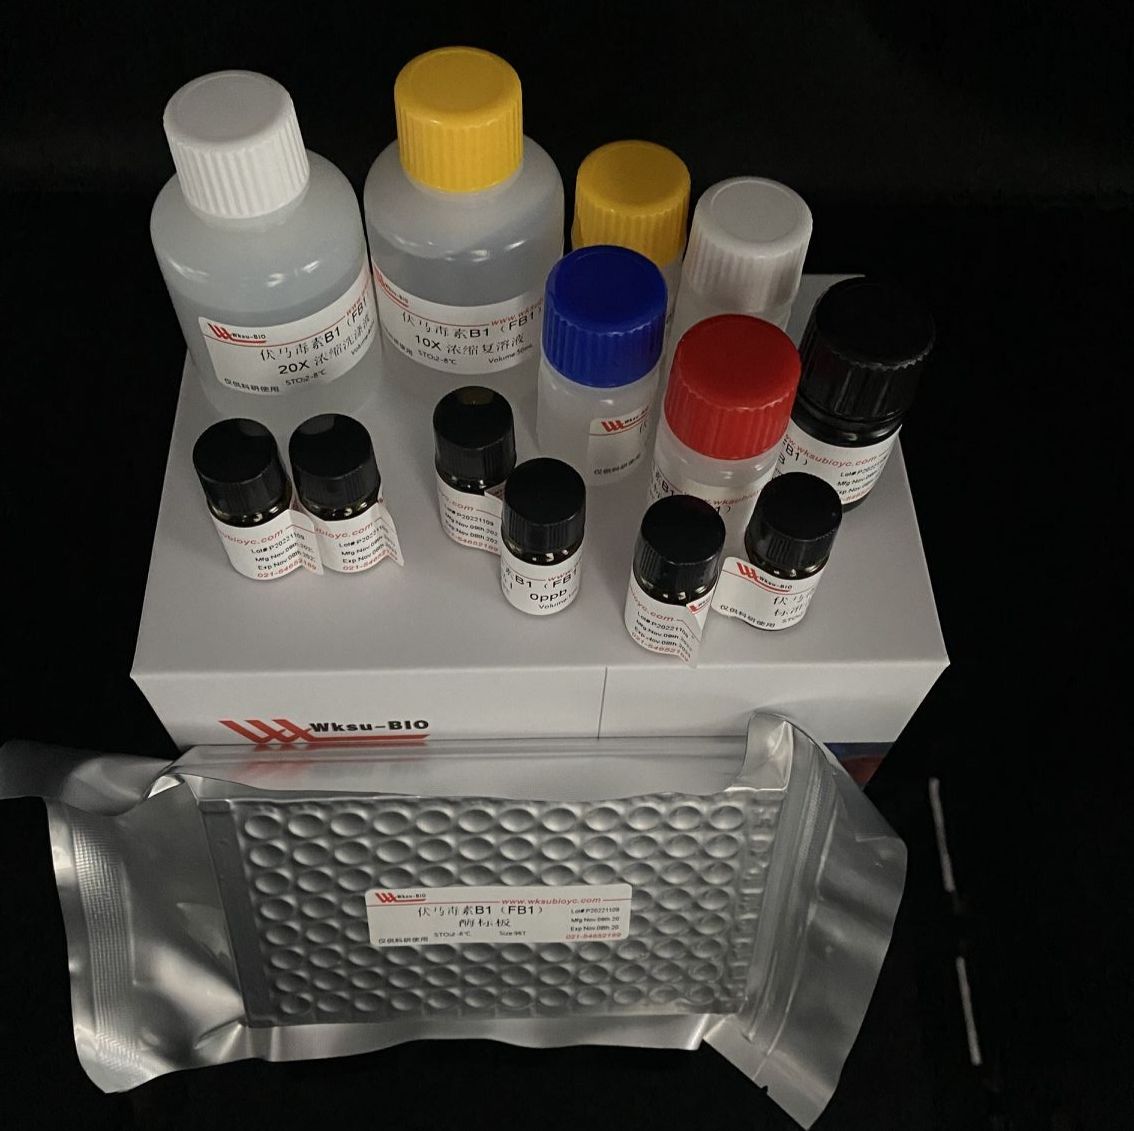 糖原合成酶(GCS)试剂盒,微板法